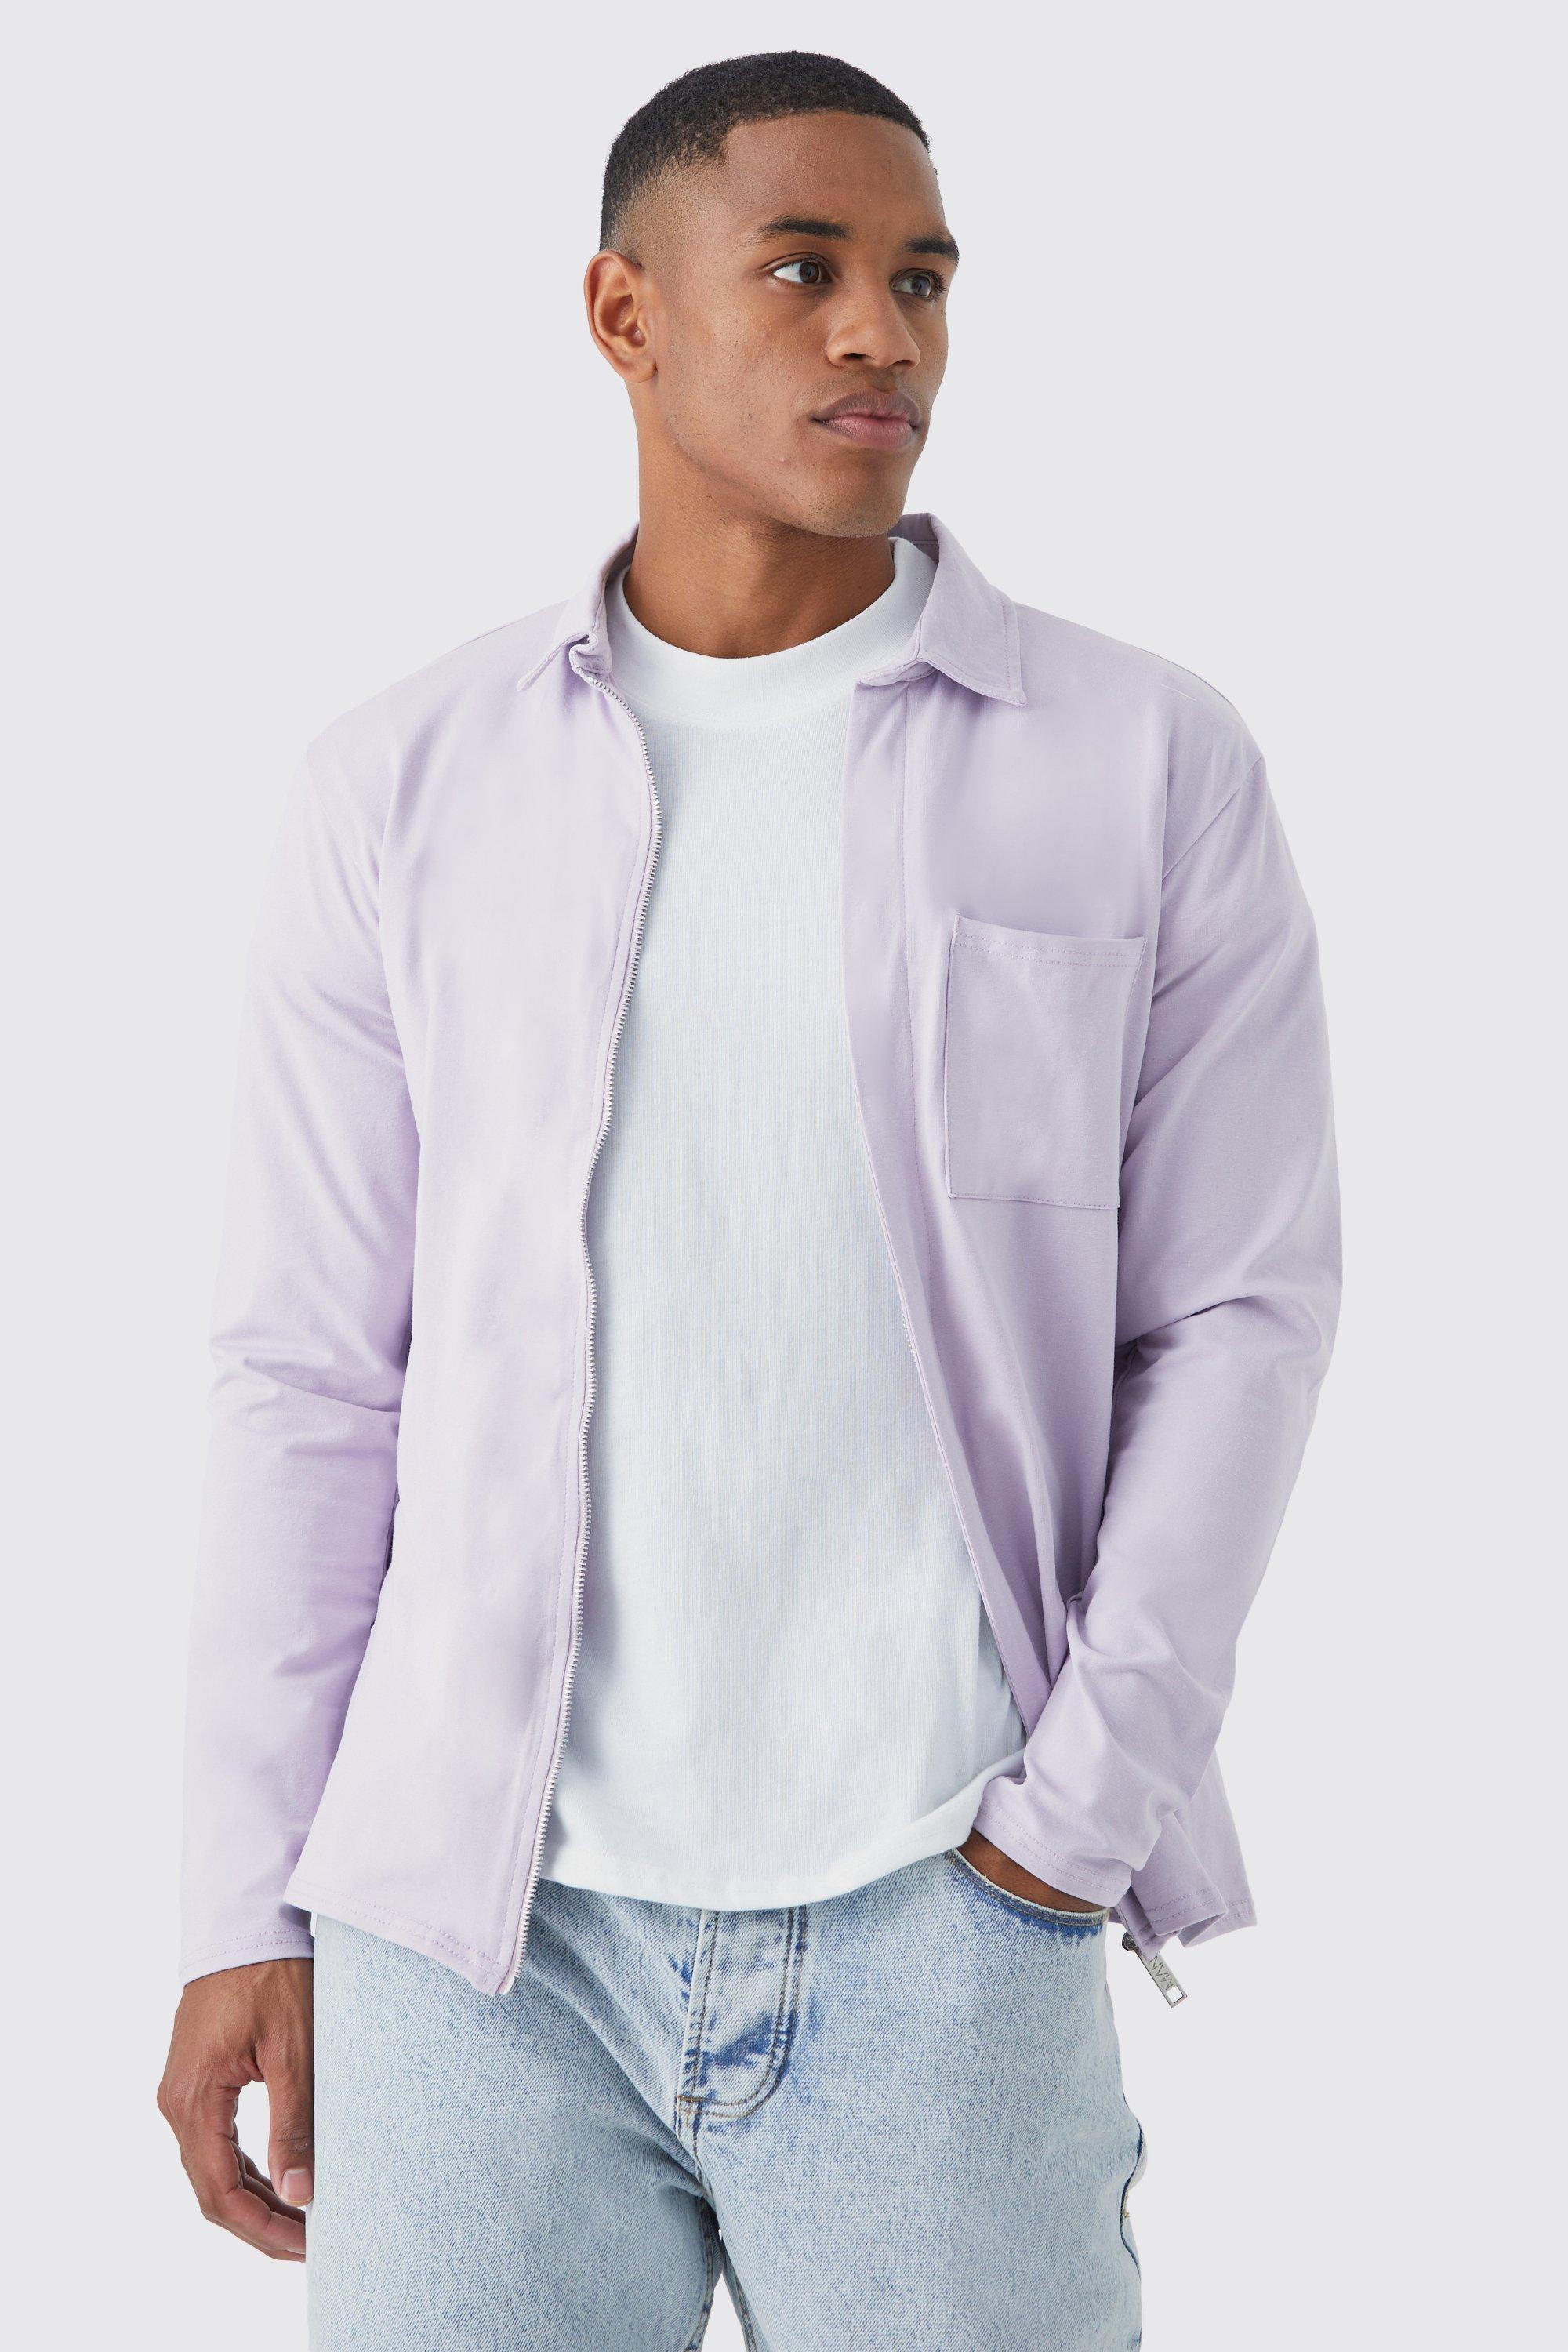 surchemise en jersey homme - violet - m, violet